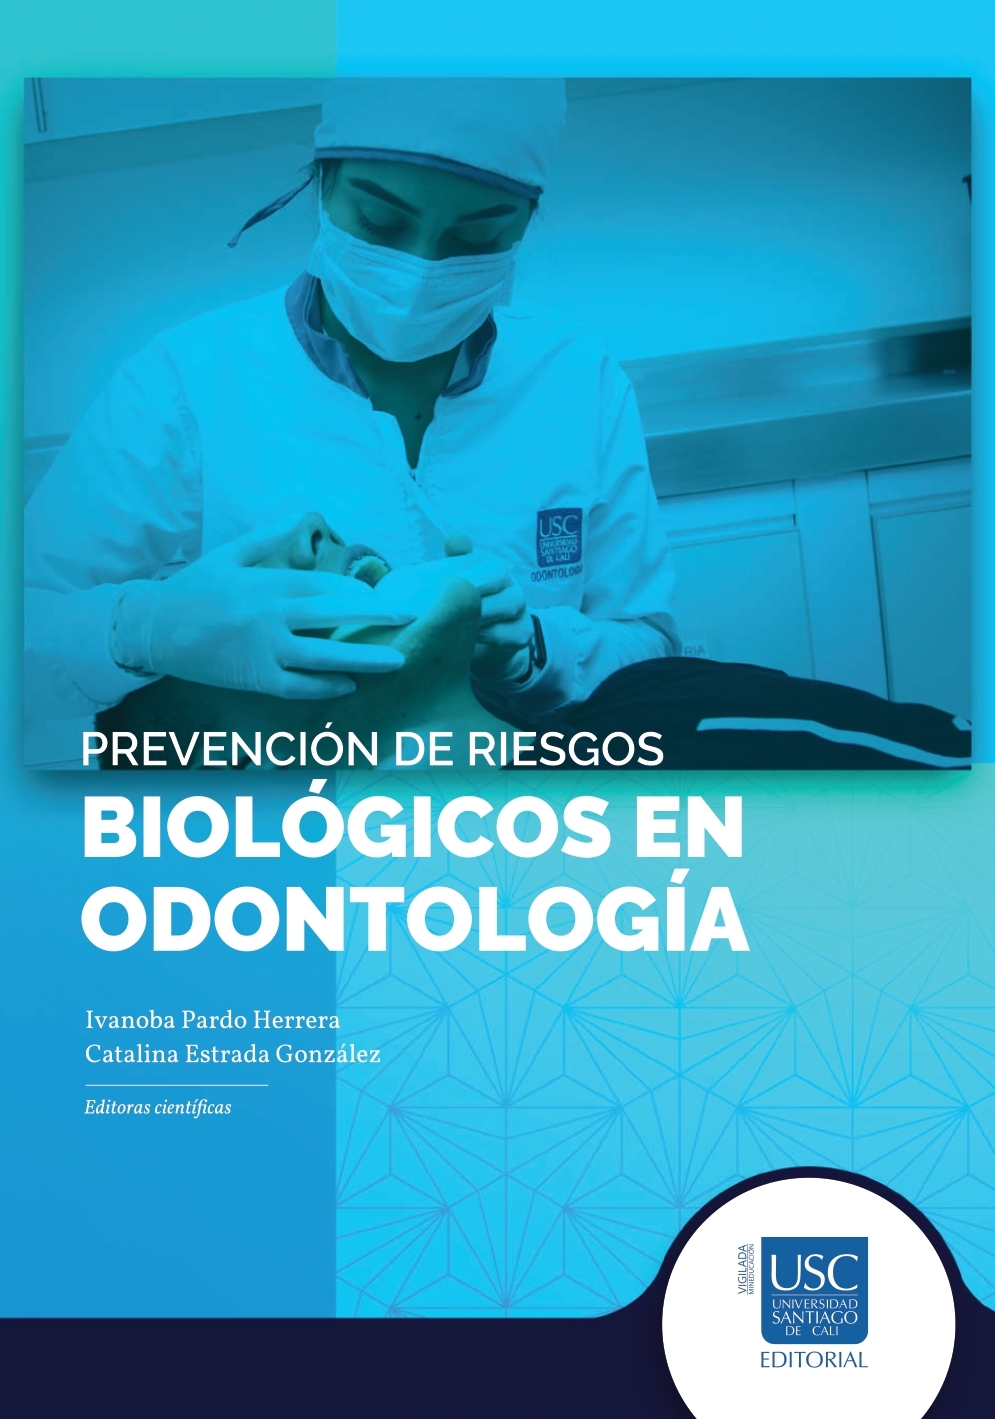 Imagen de portada del libro Prevención de riesgos biológicos en odontología